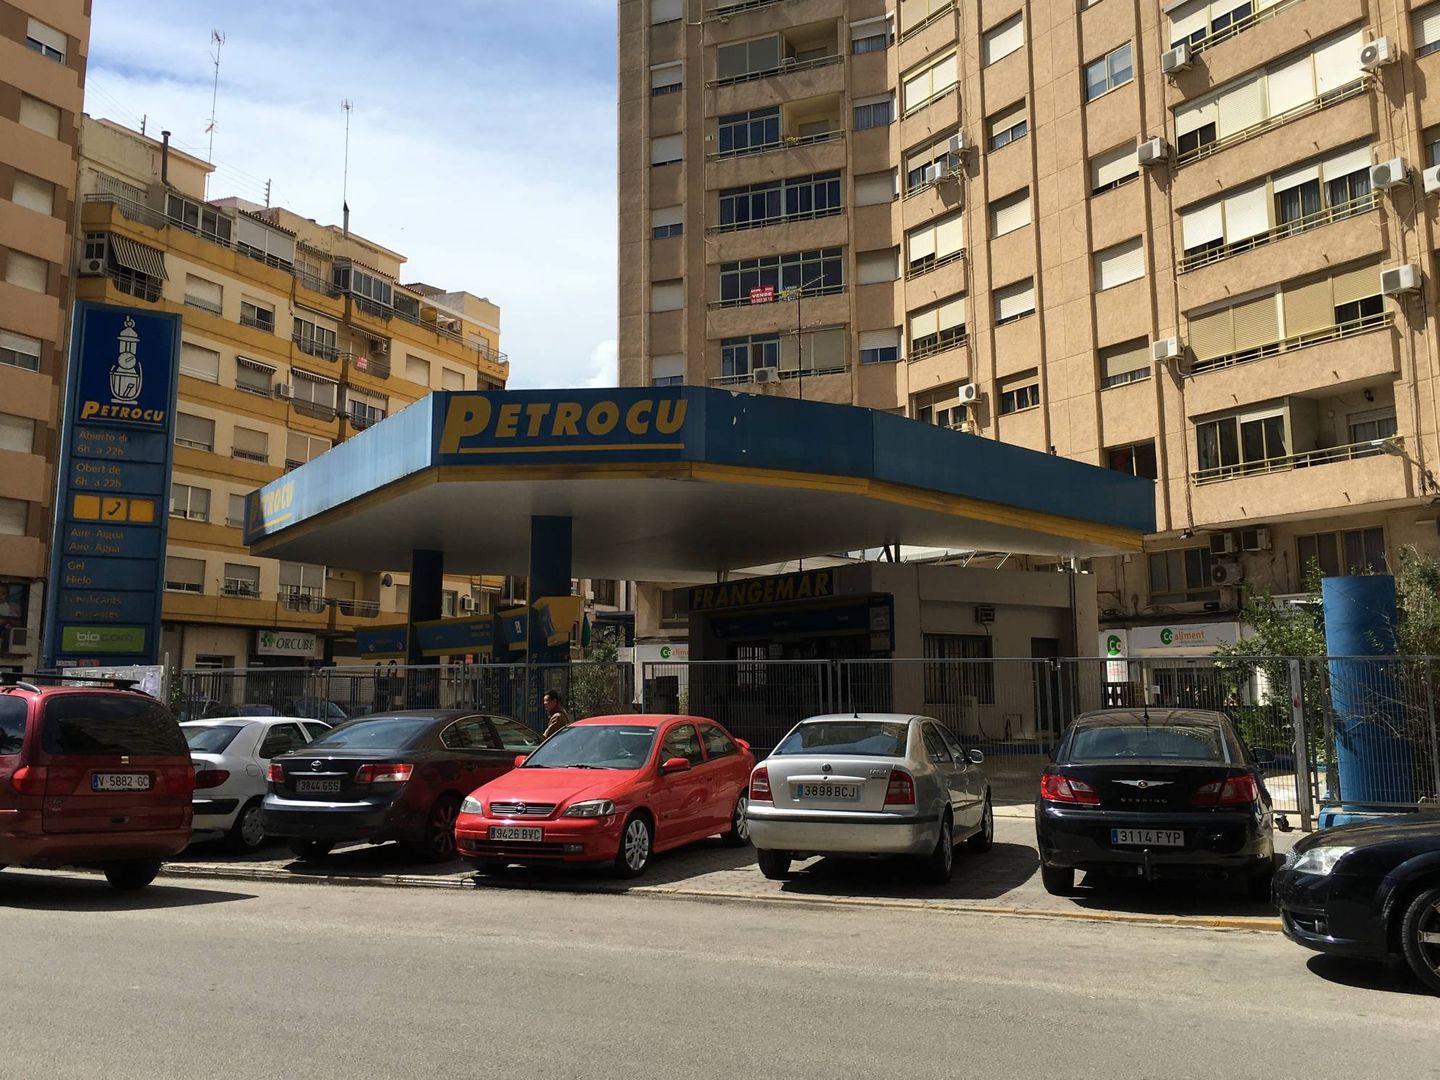 La gasolinera se ubica en el centro de la localidad de Alzira. (EC)